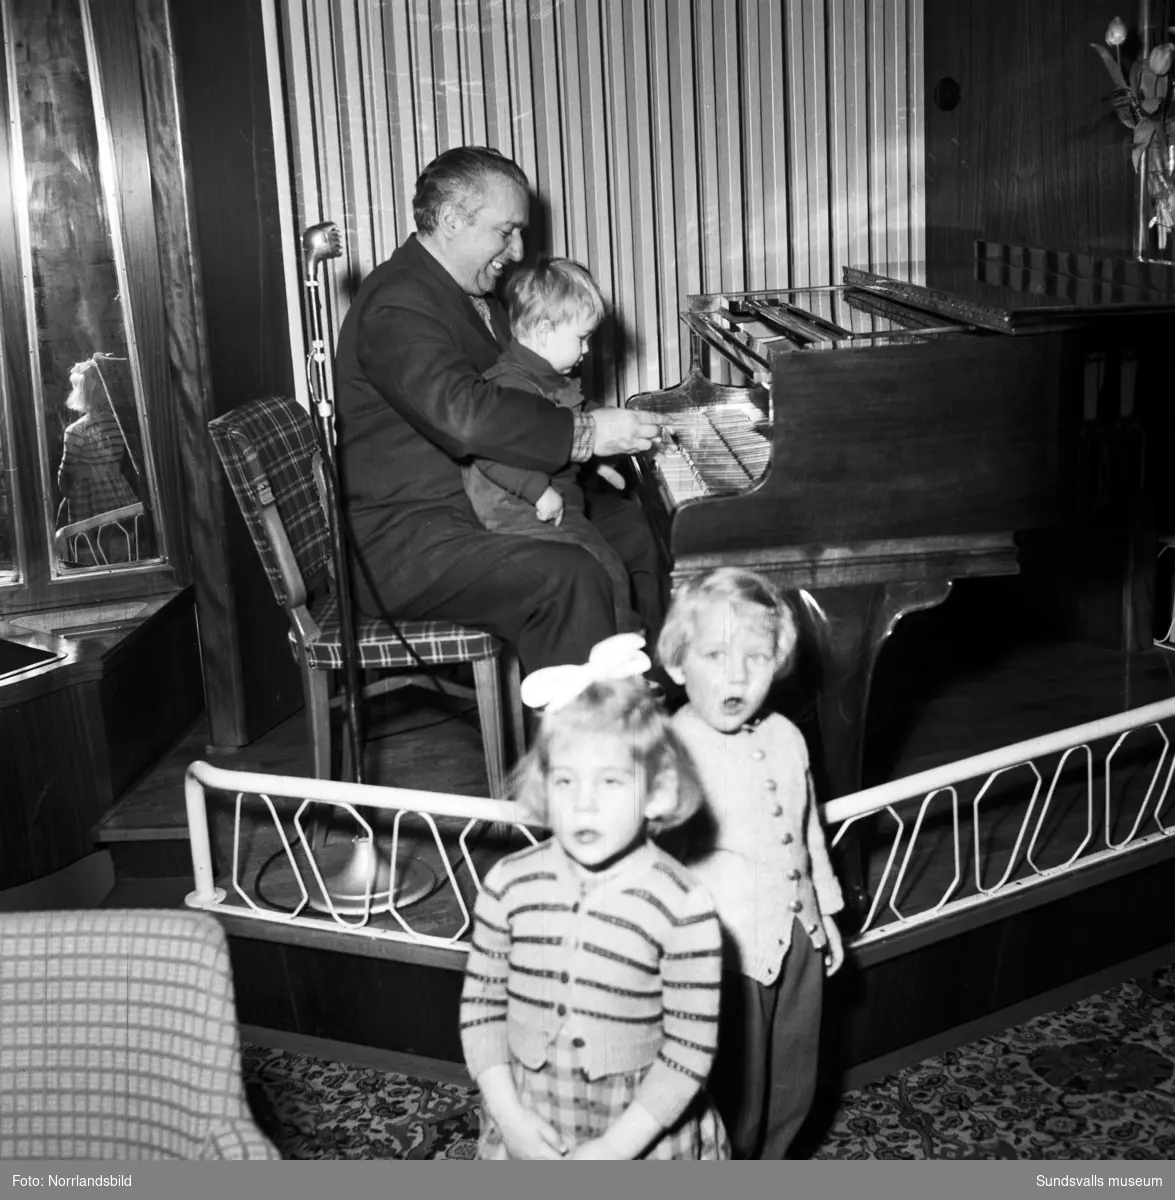 Konditori Terrassen på Tivolivägen 22. Pianisten Tony Ferraresi sitter vid pianot med ett litet barn i knät.